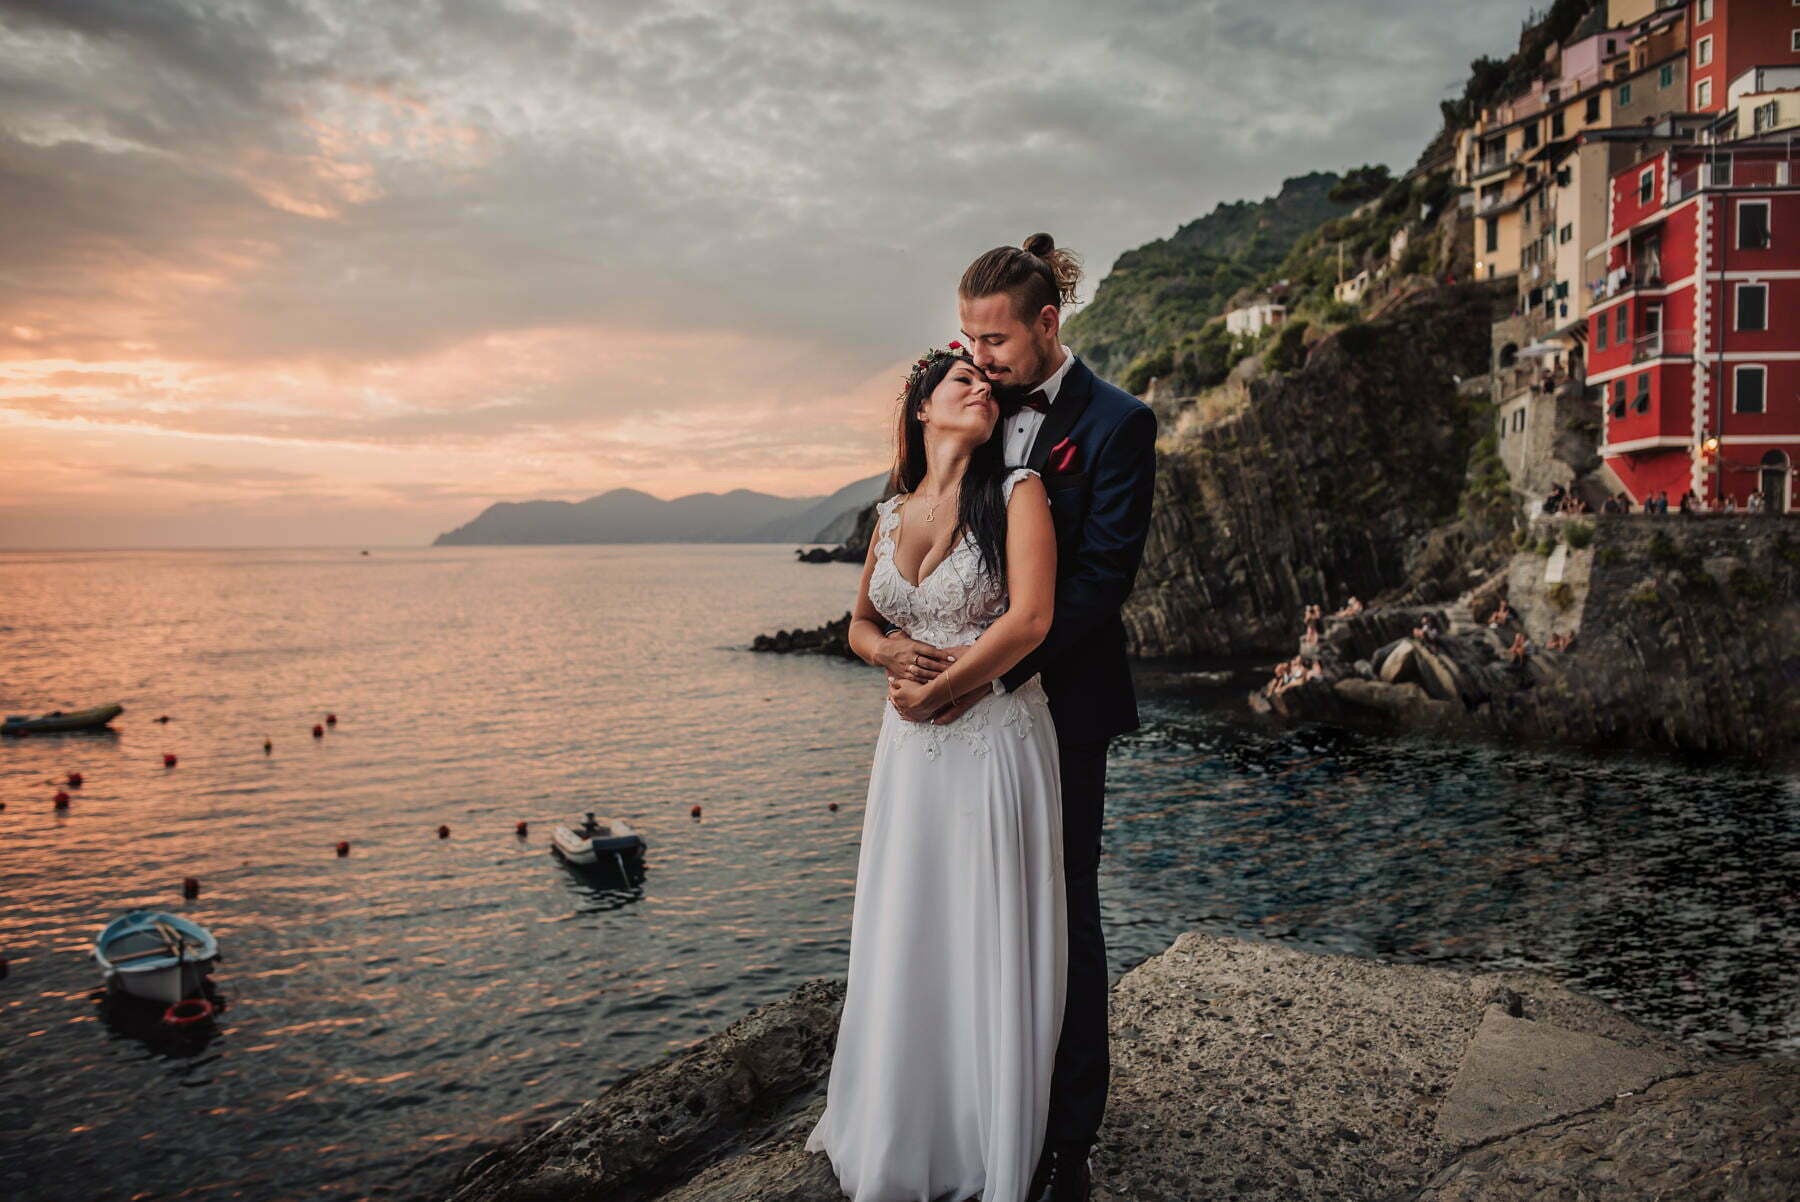 Intimate wedding in Cinque Terre – Italy